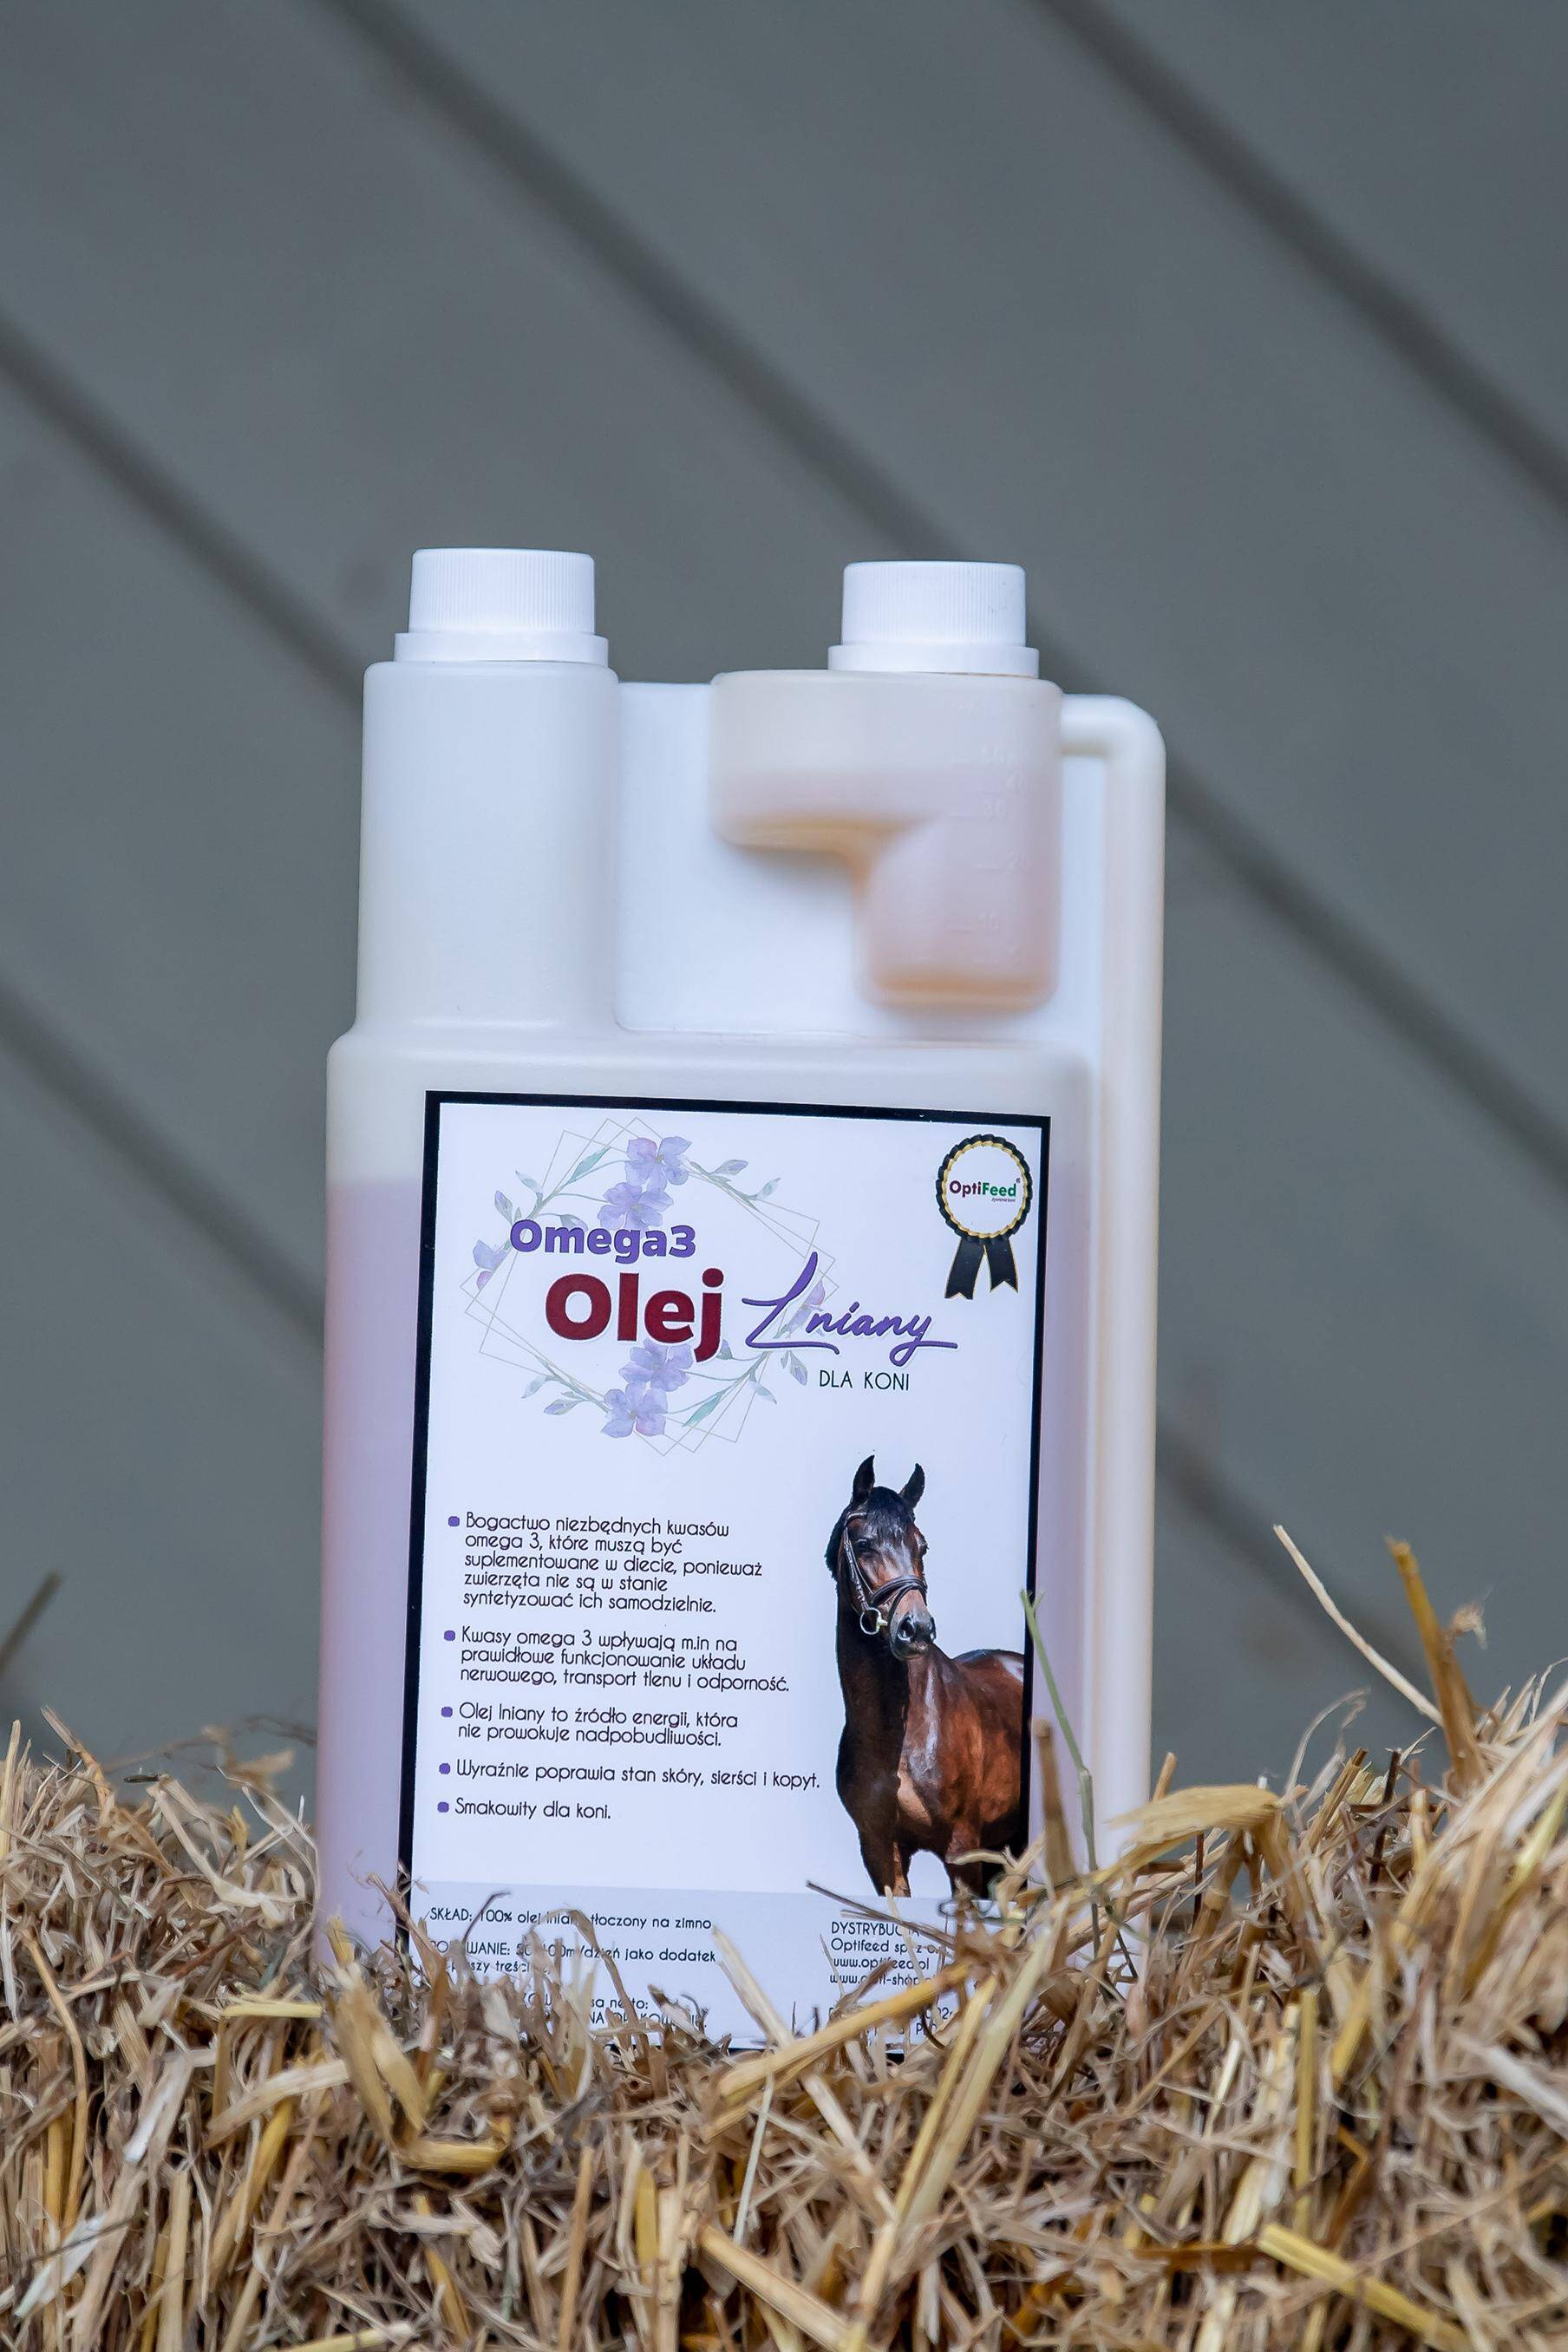 Omega 3 Olej Lniany dla koni 1l